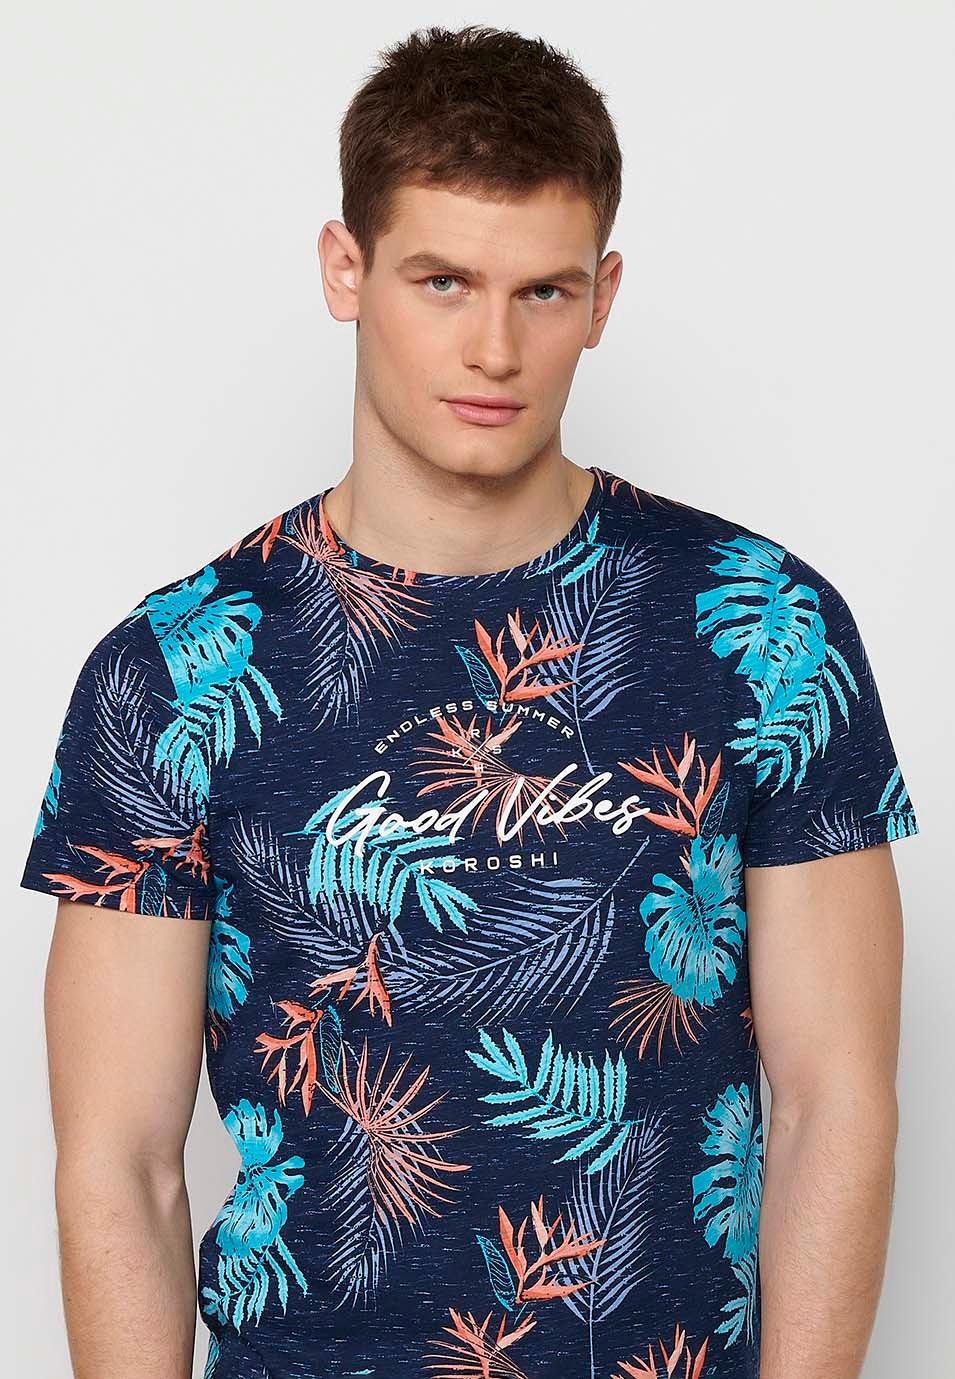 T-shirt manches courtes en coton imprimé tropical multicolore marine pour homme